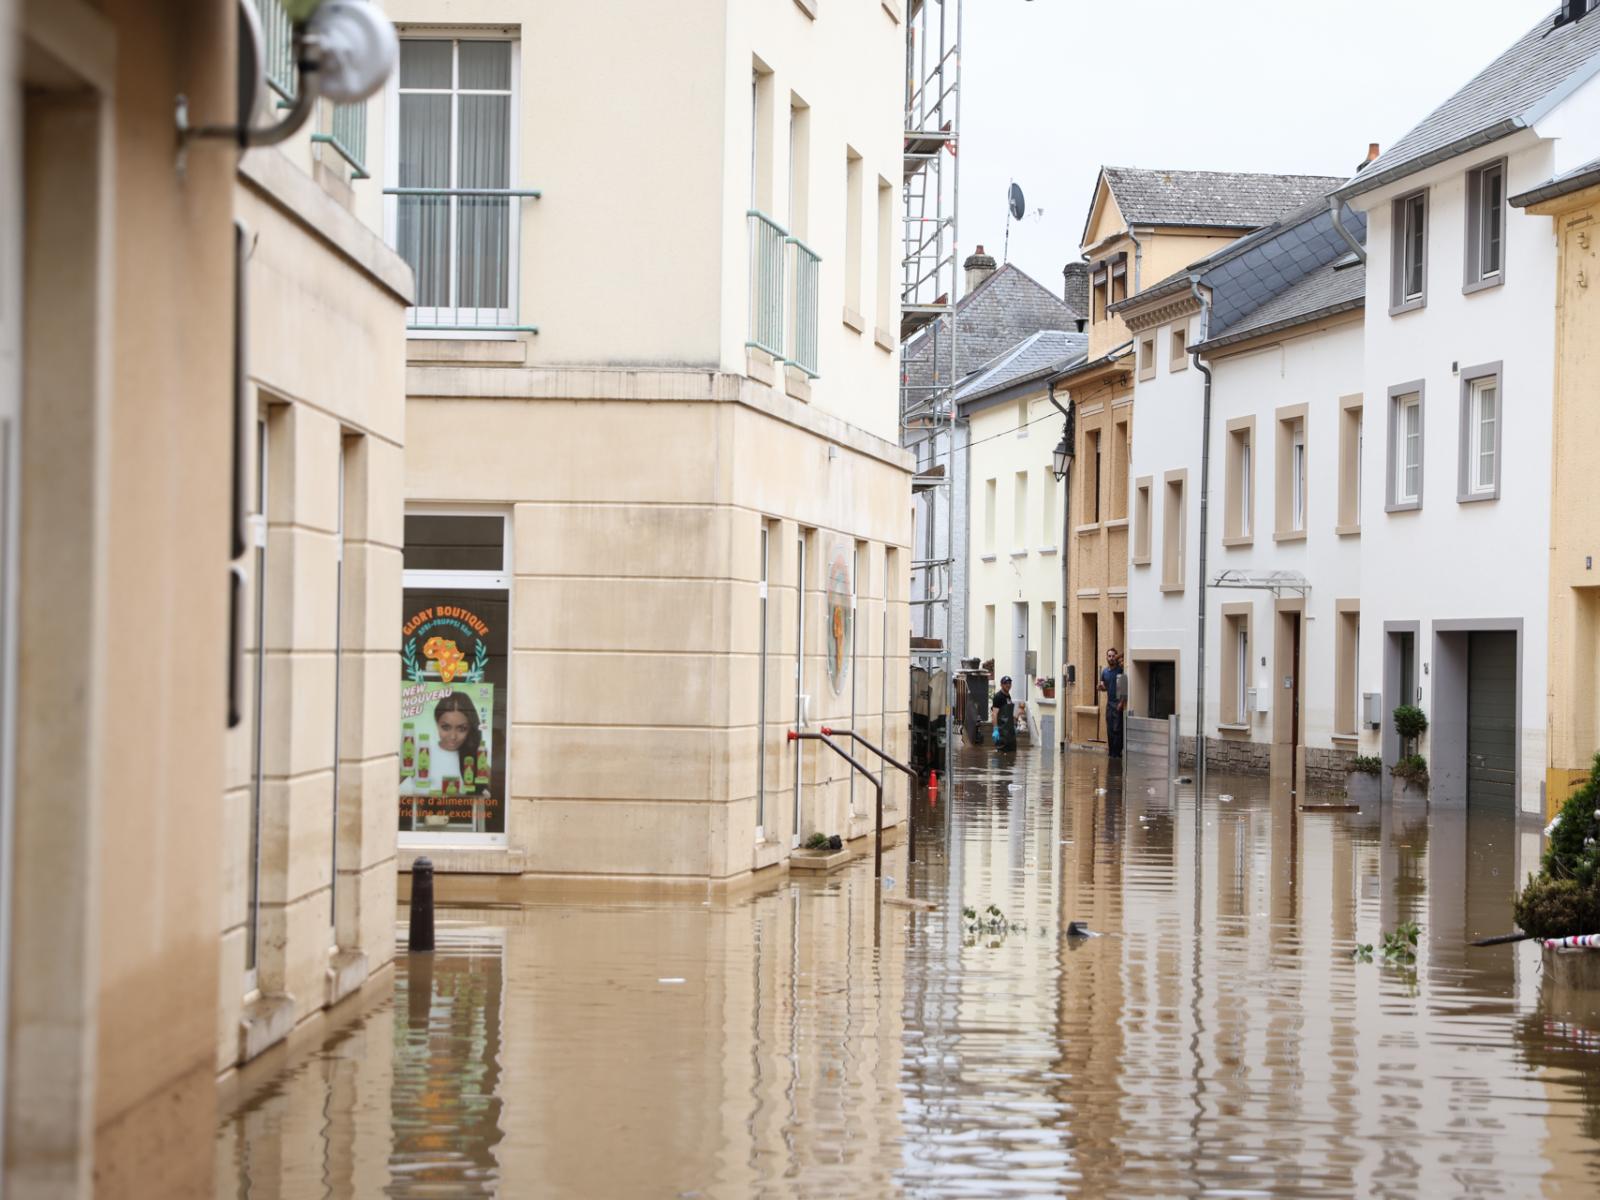 Le rues inondées d'Echternach